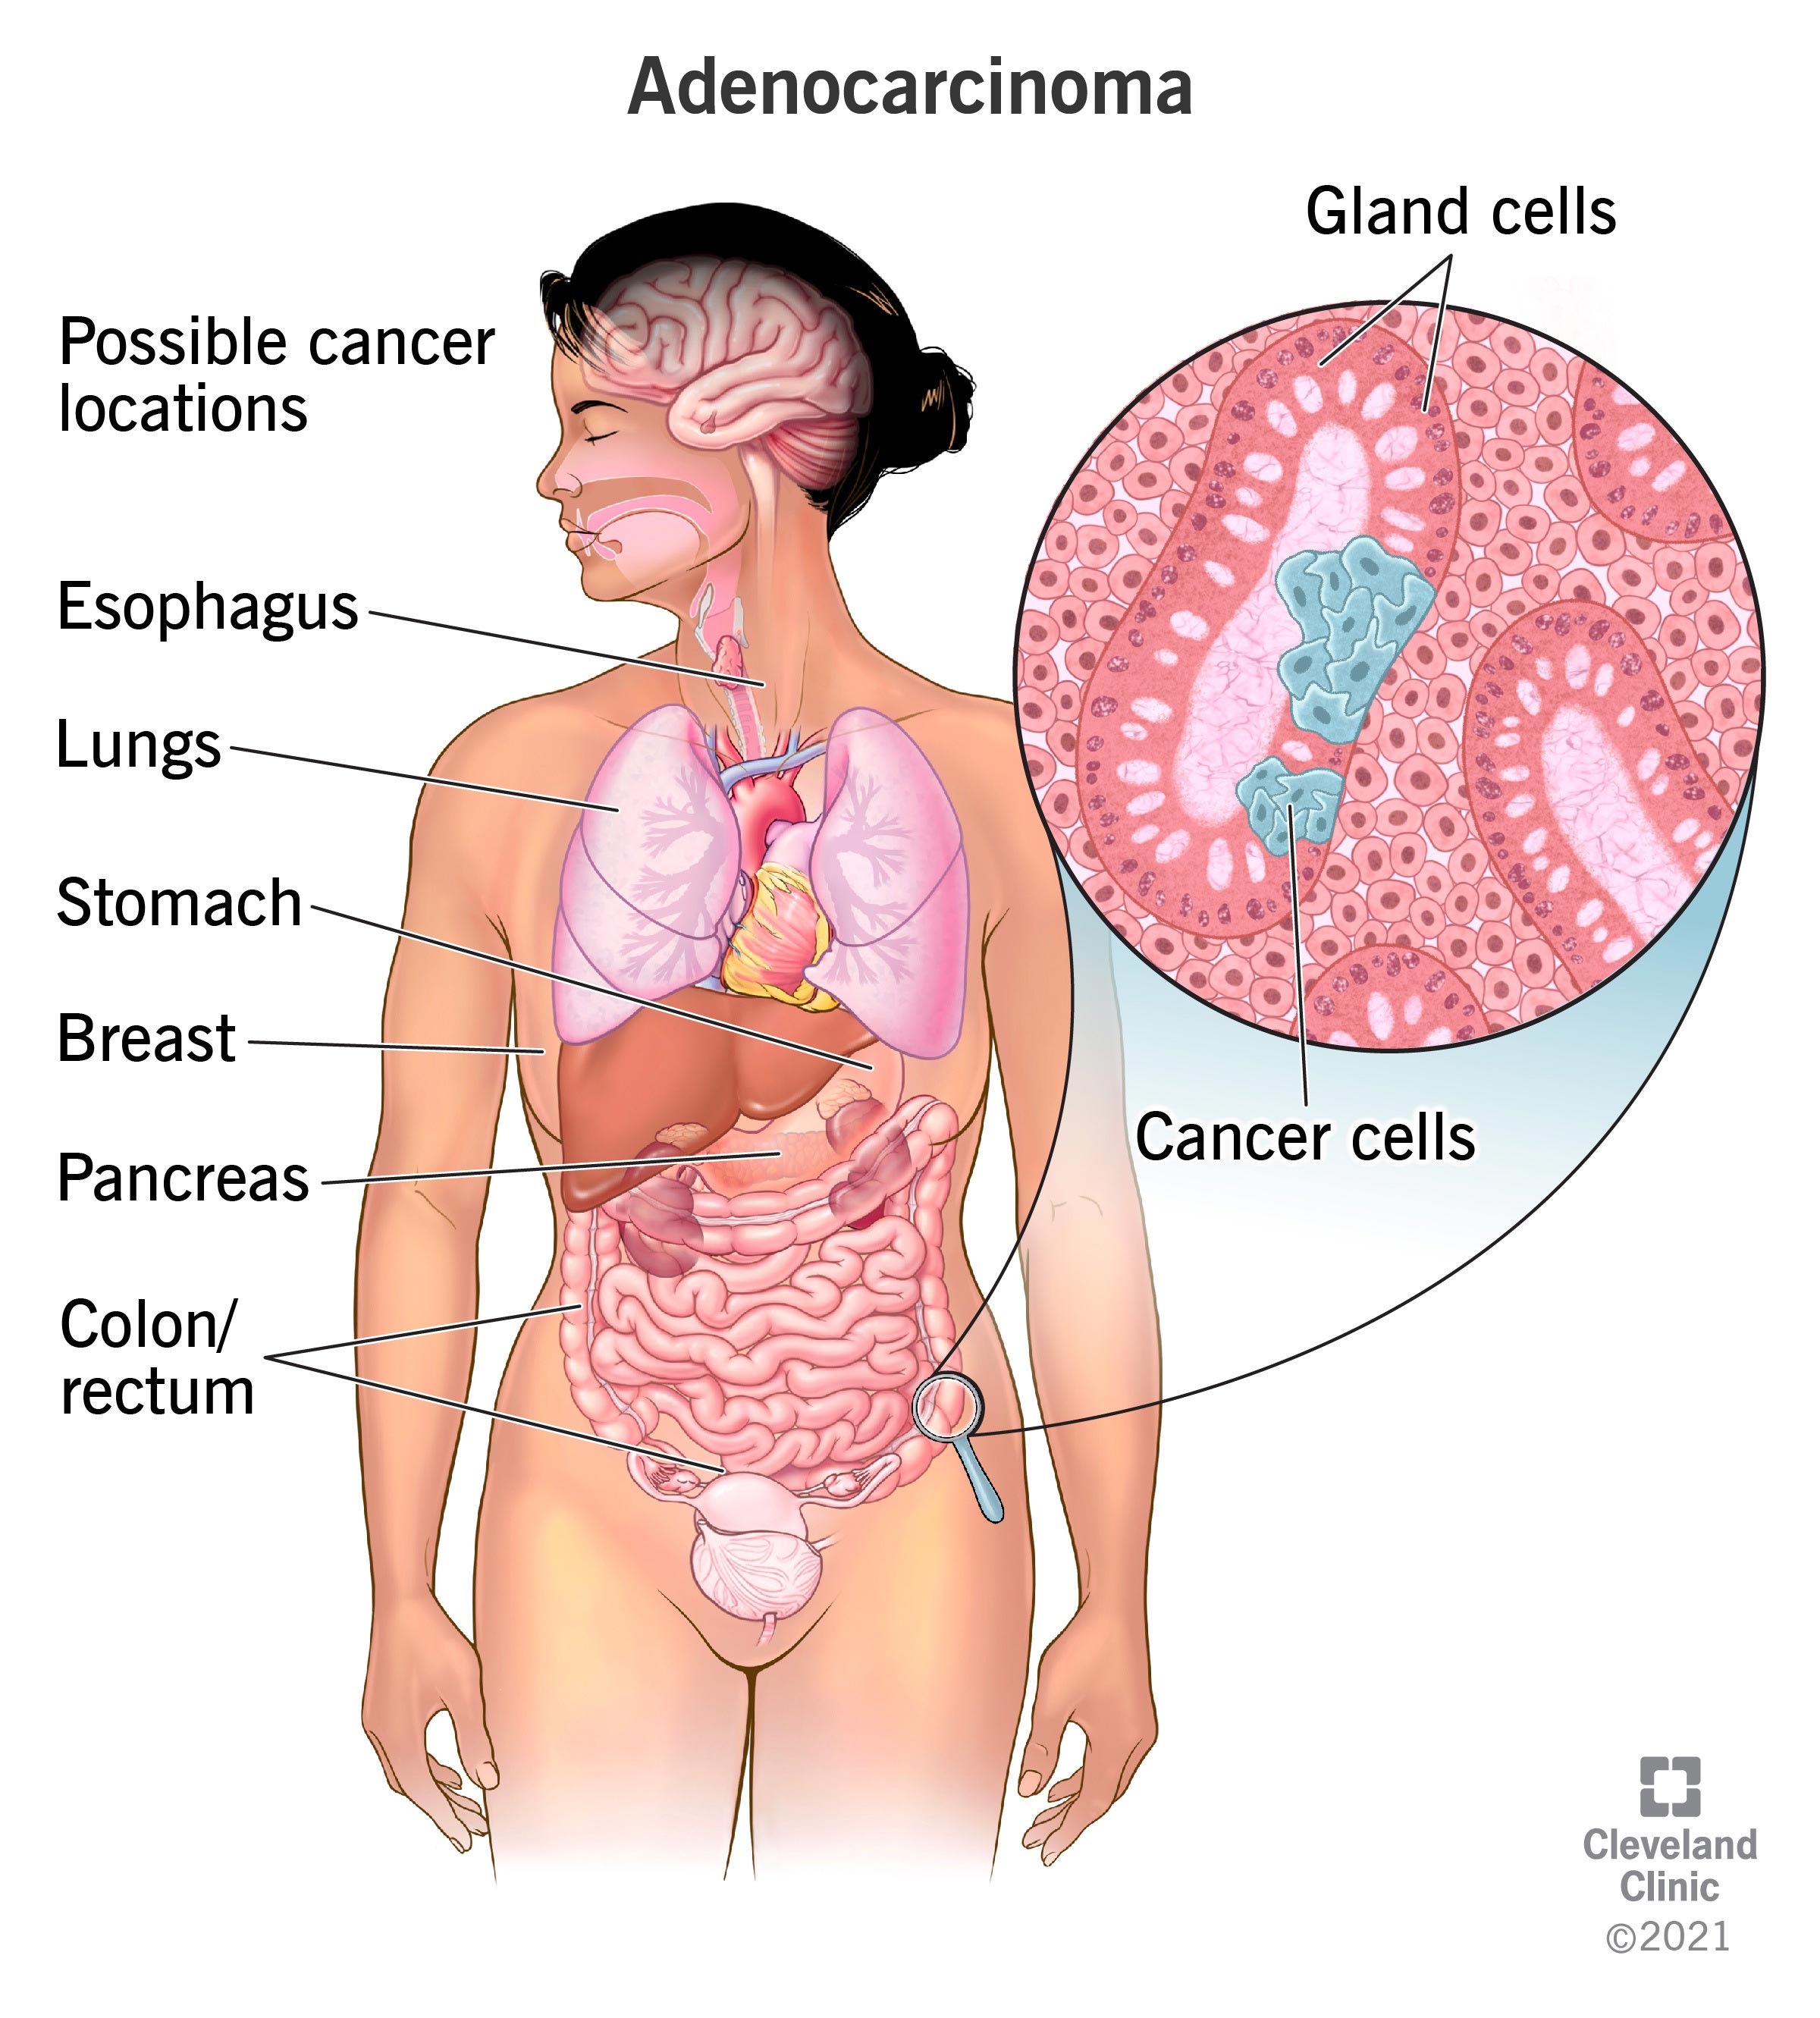 Cellule tumorali che si formano nelle cellule epiteliali ghiandolari che rivestono il colon.